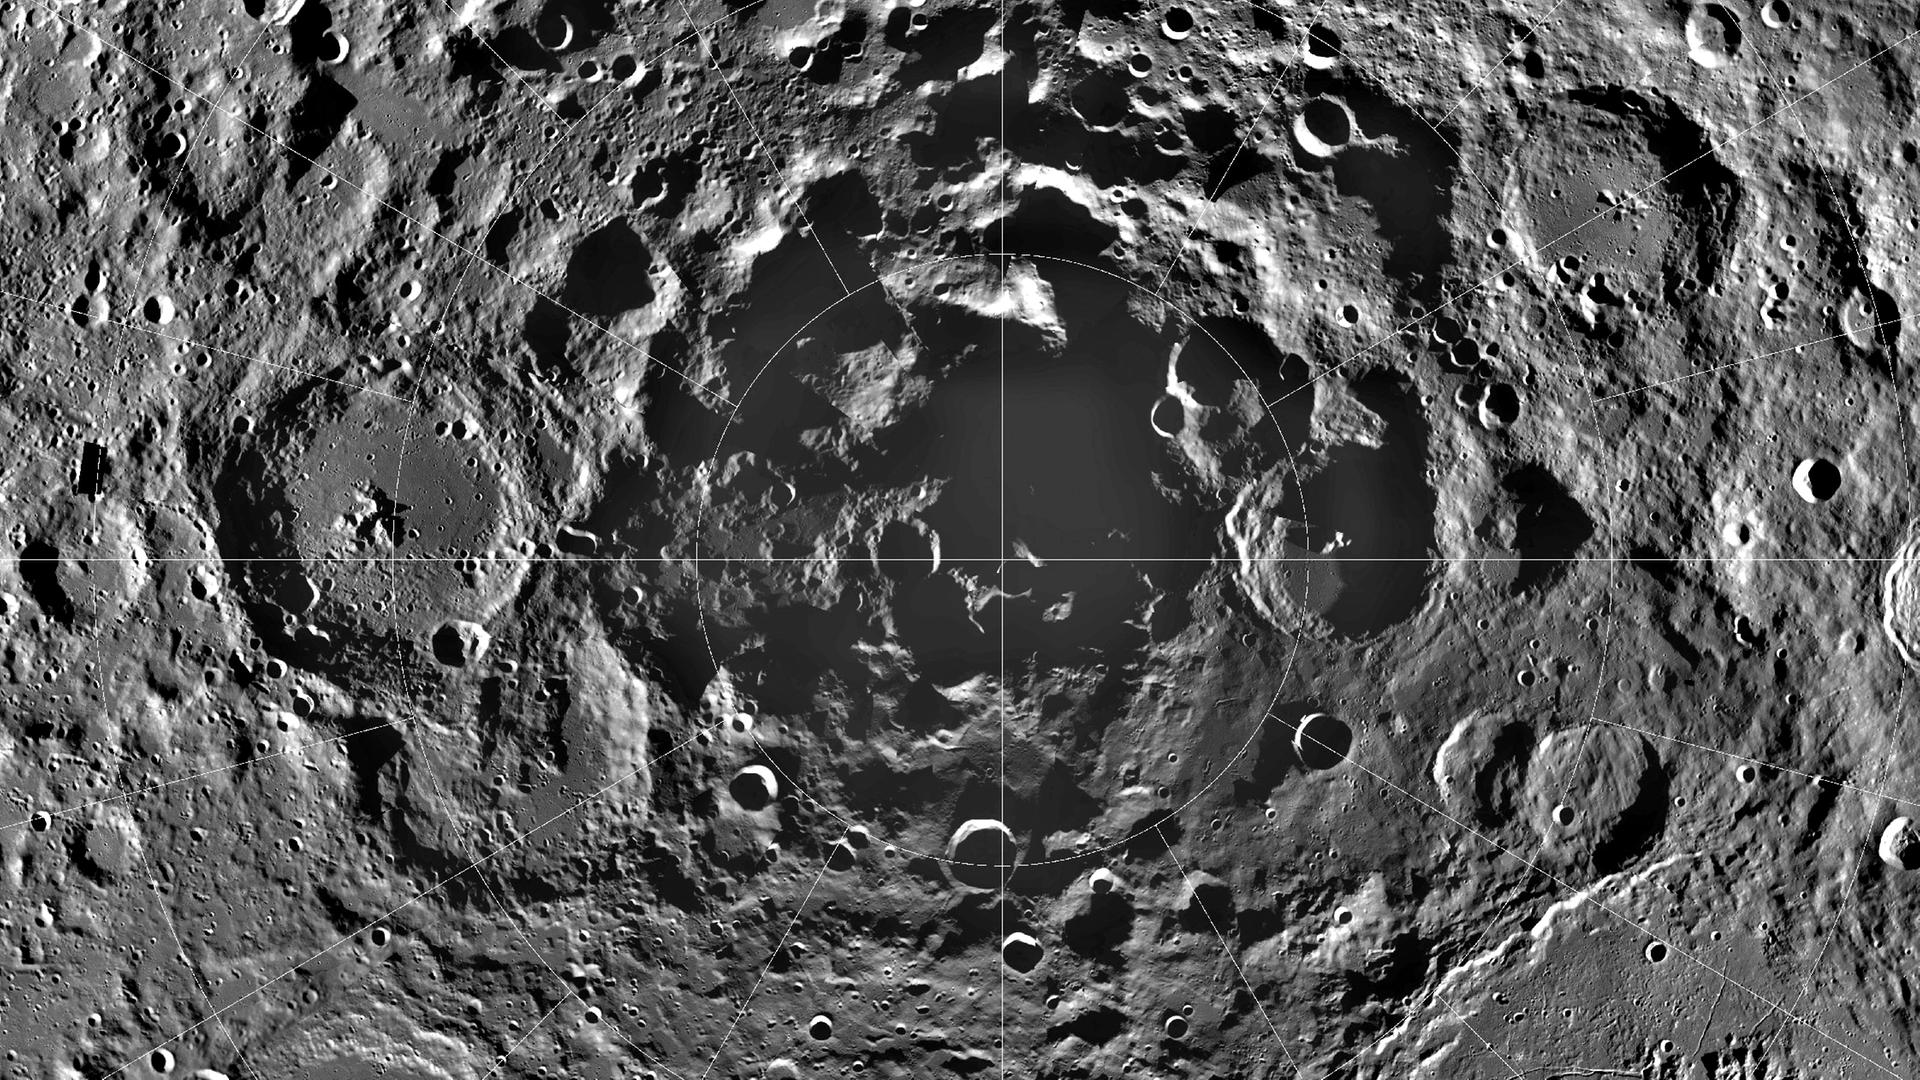 Der Mondsüdpol ist Ziel vieler Raumfahrtprojekte: Dort gibt es eisige Krater, die stets im Dunkeln liegen – und Bergspitzen, die fast immer von der Sonne beschienen sind.

